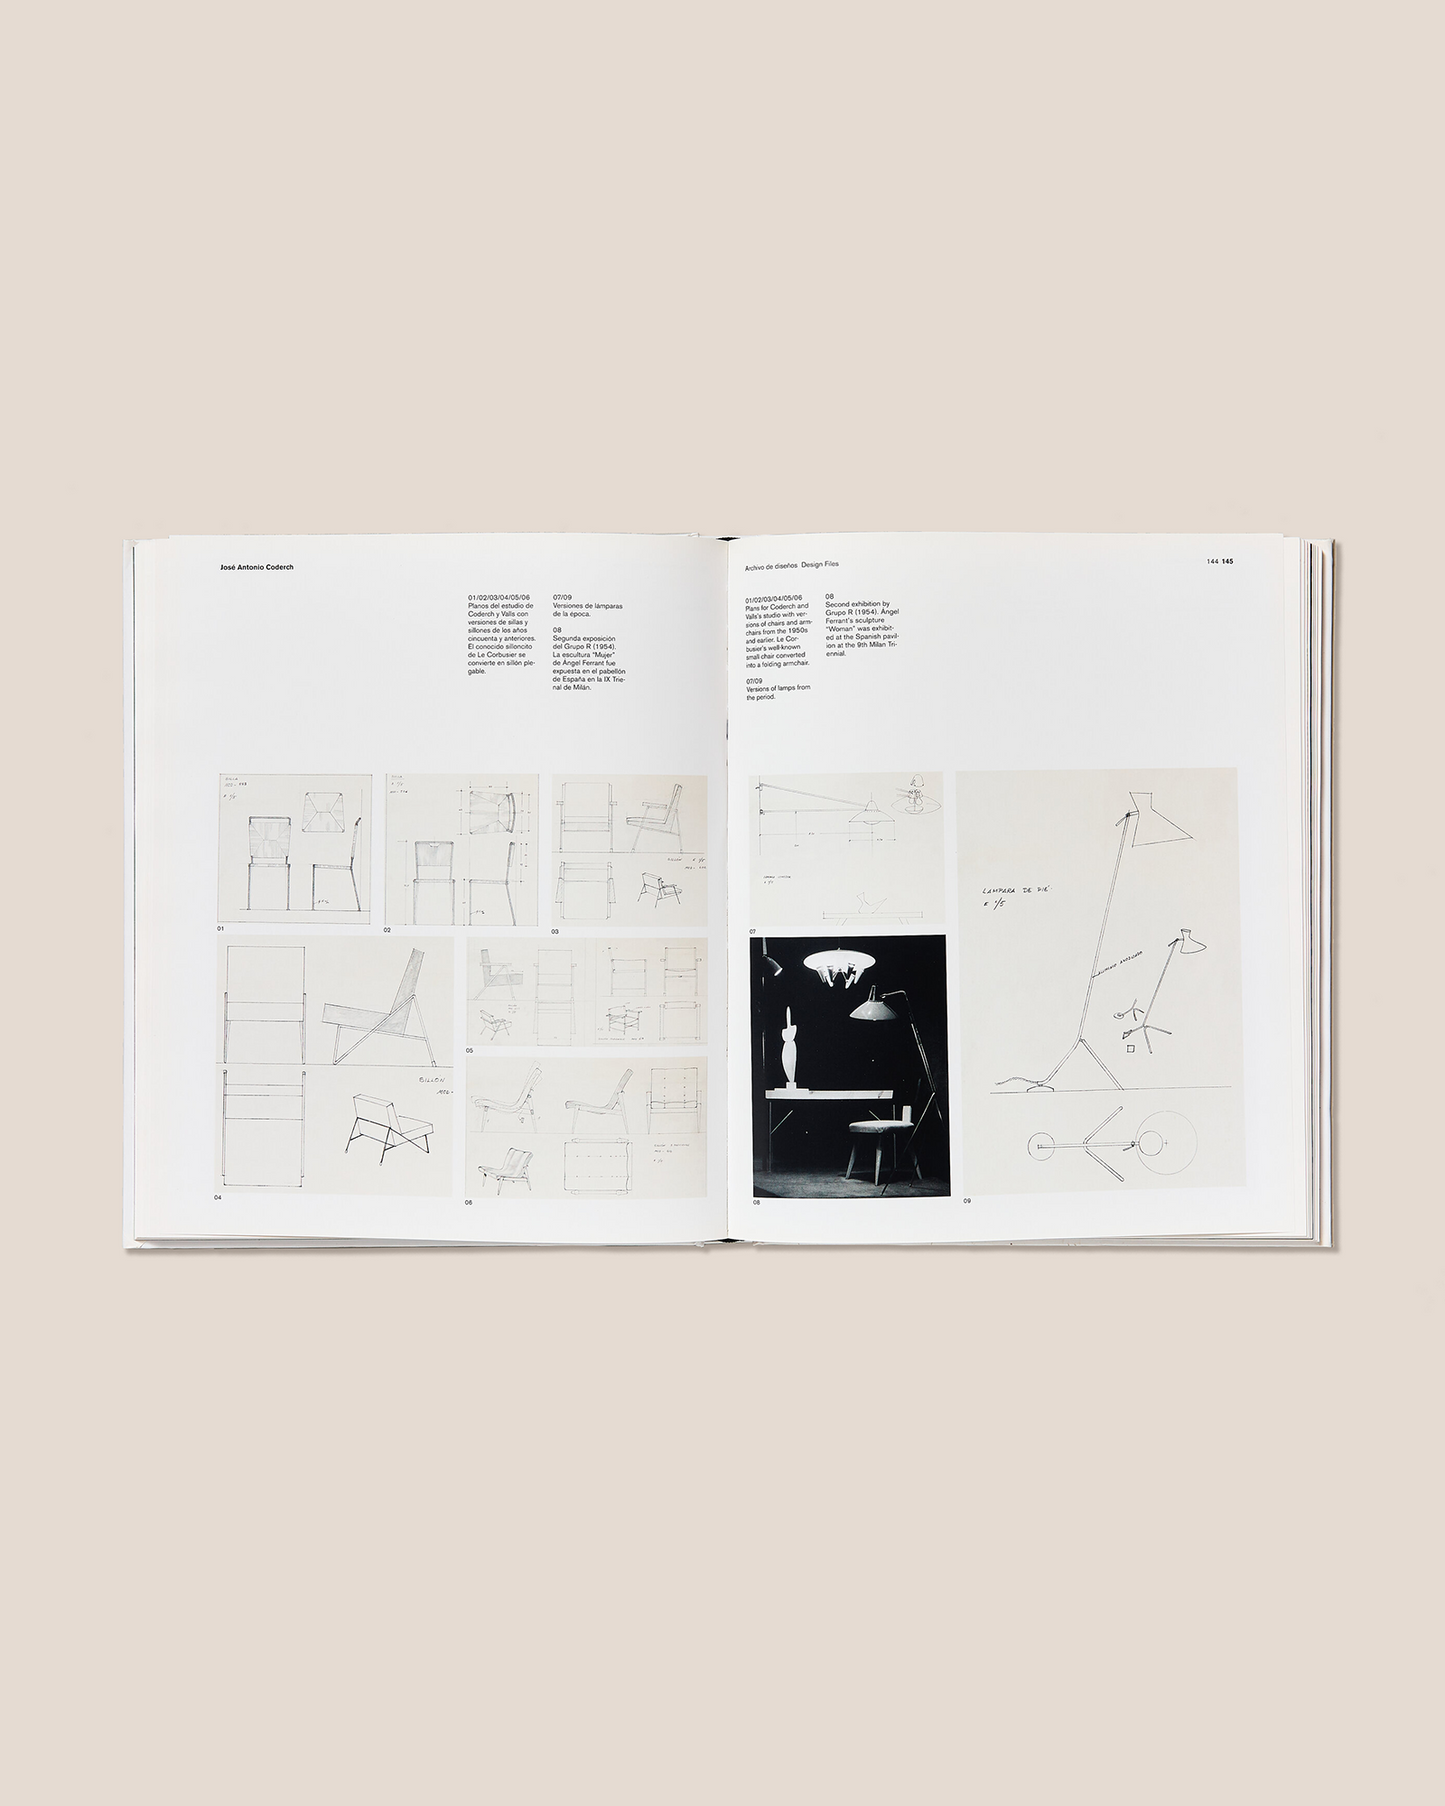 JOSÉ ANTONIO CODERCH - Design Biography Book by Antonio Armesto & Rafael Diez